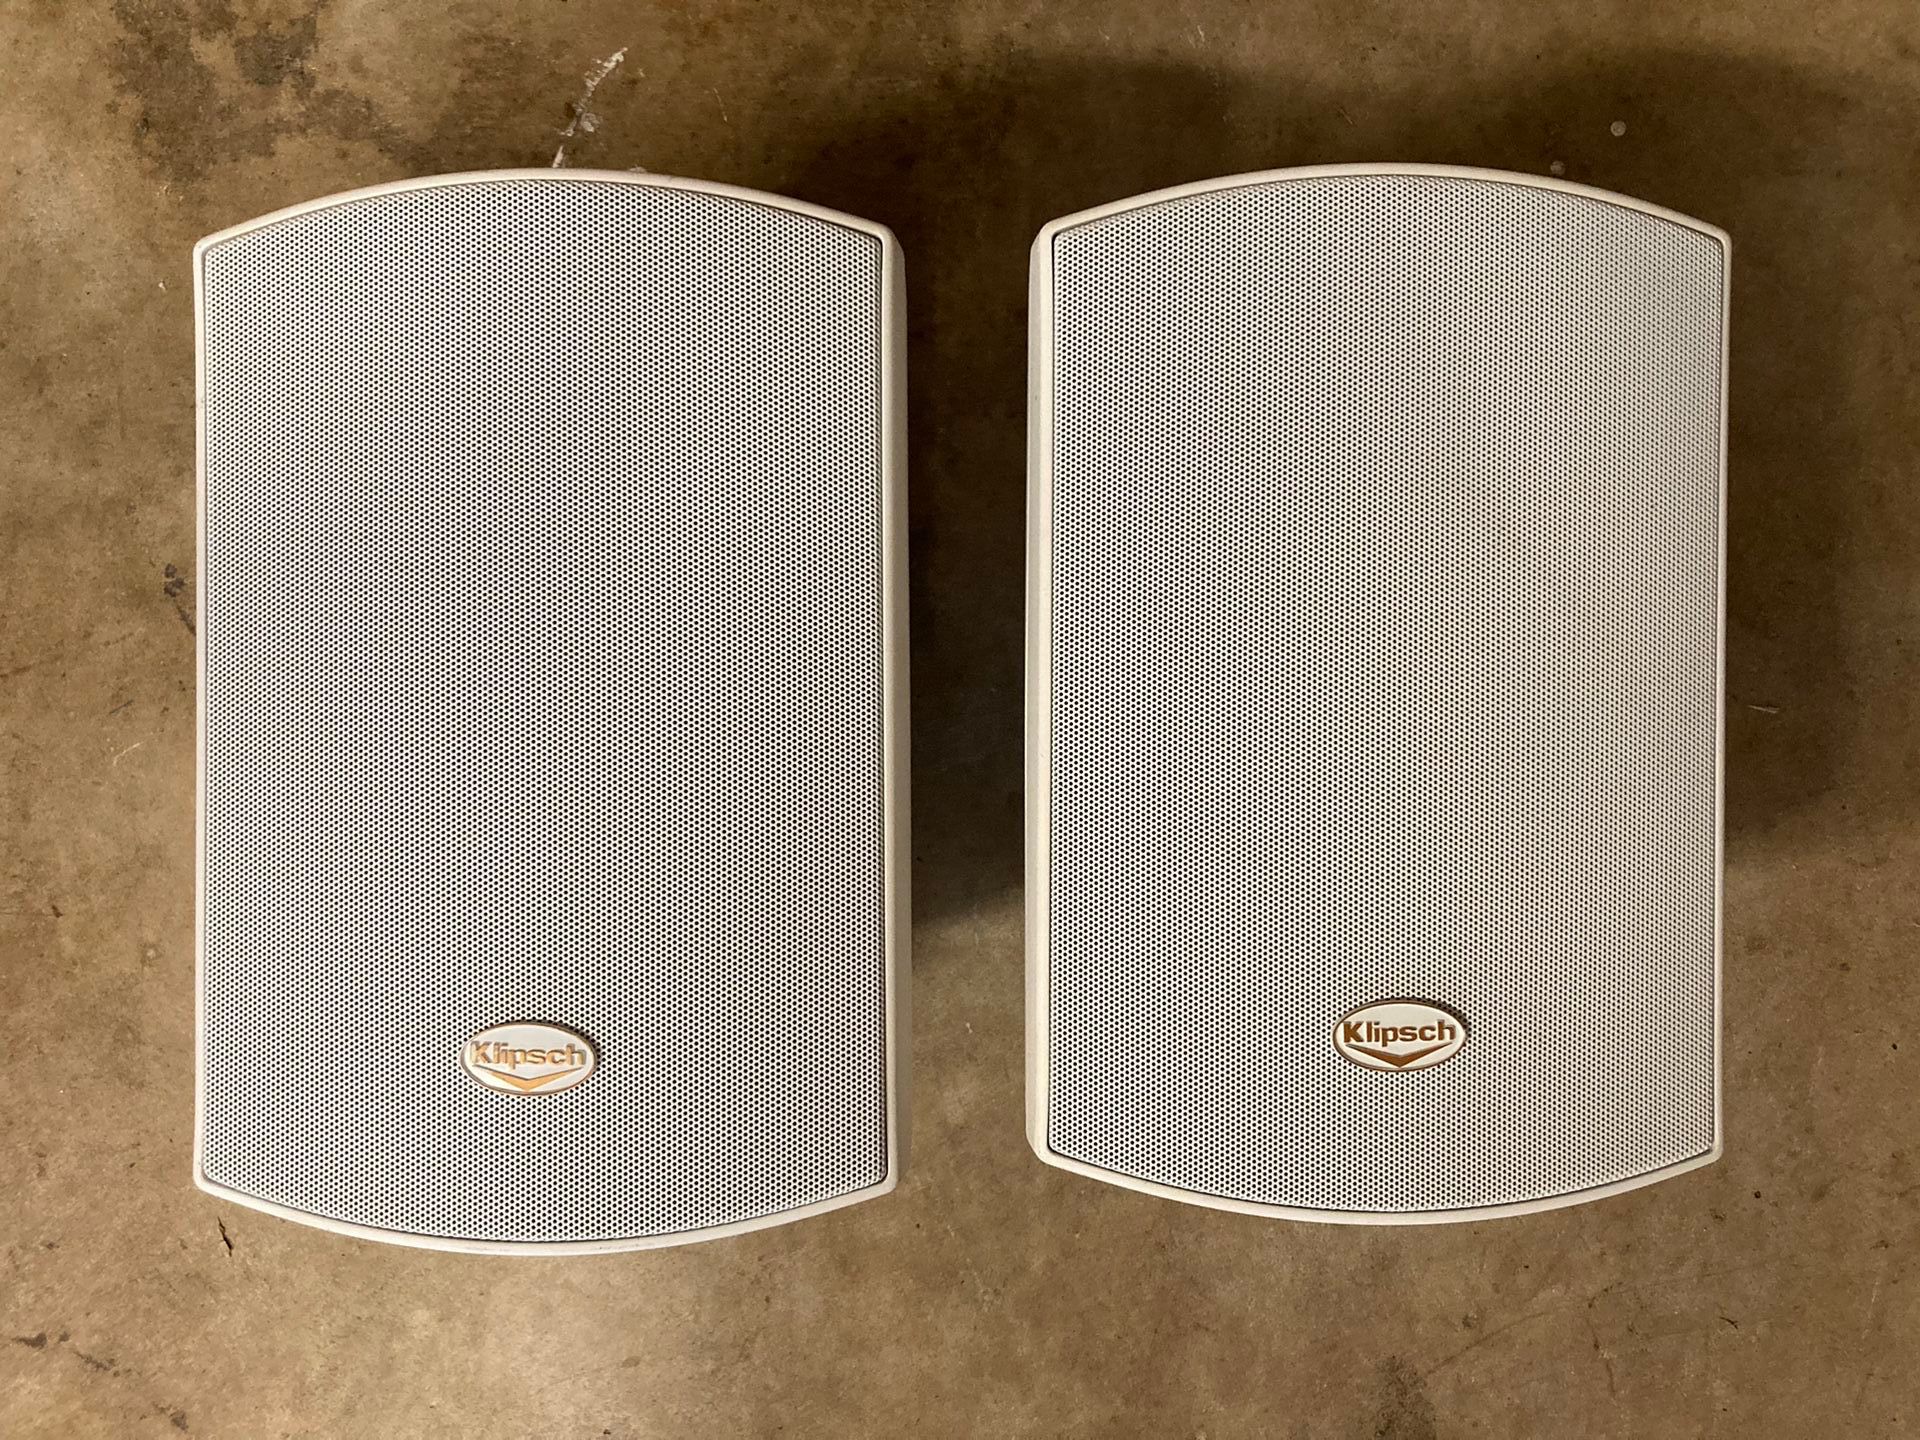 Klipsch Outdoor Speakers AW525